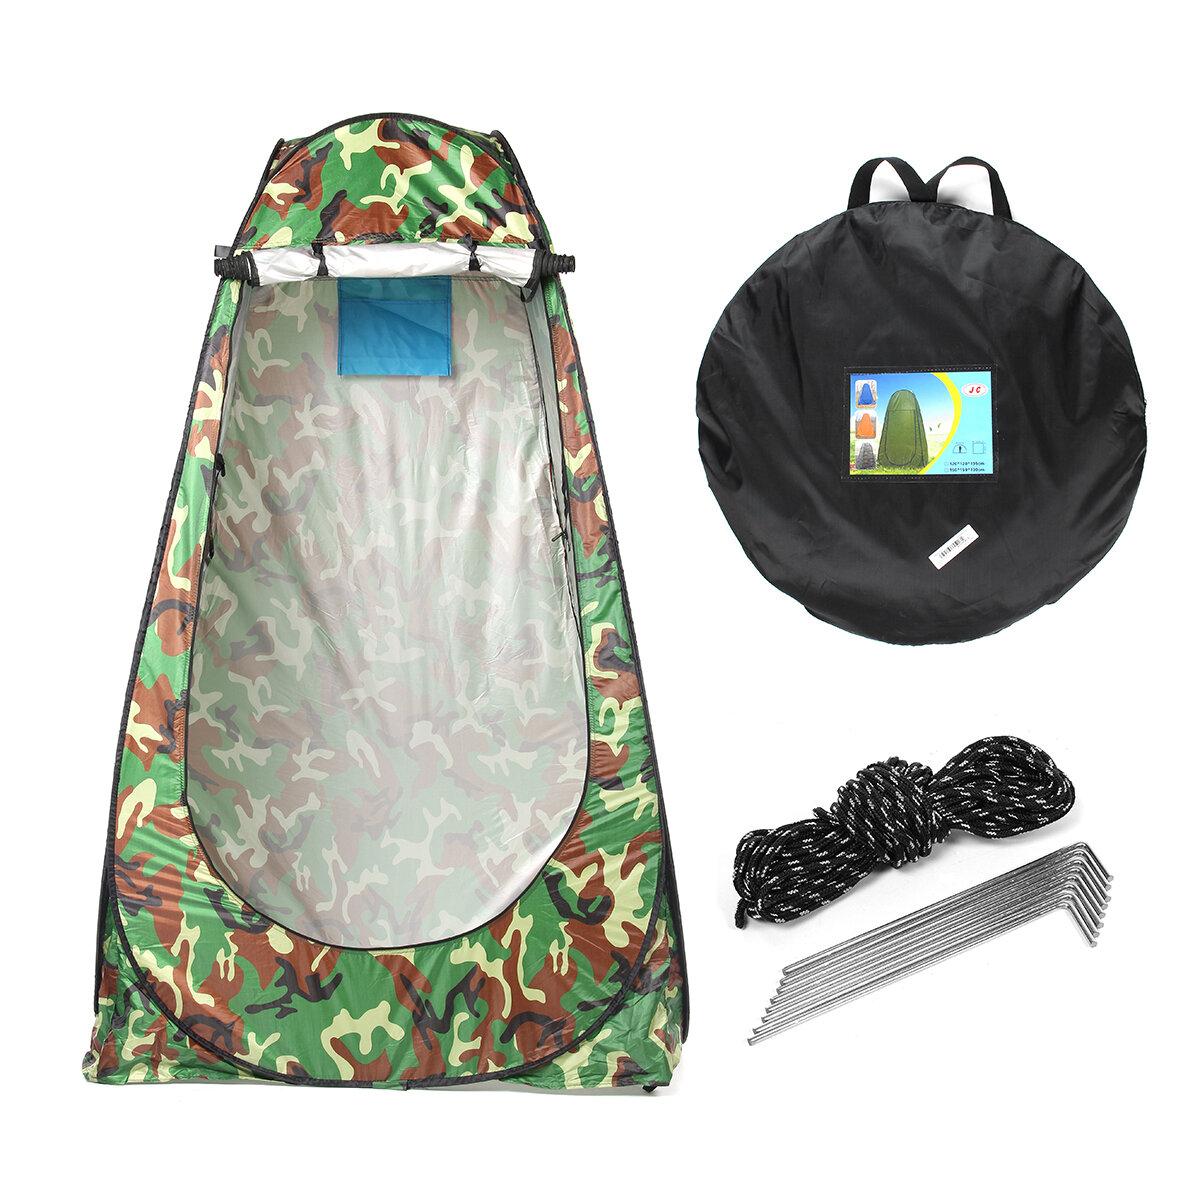 Tenda de chuveiro e banheiro privativo para uma pessoa, ideal para trocar de roupa ao ar livre durante a pesca, viagens ou na praia.